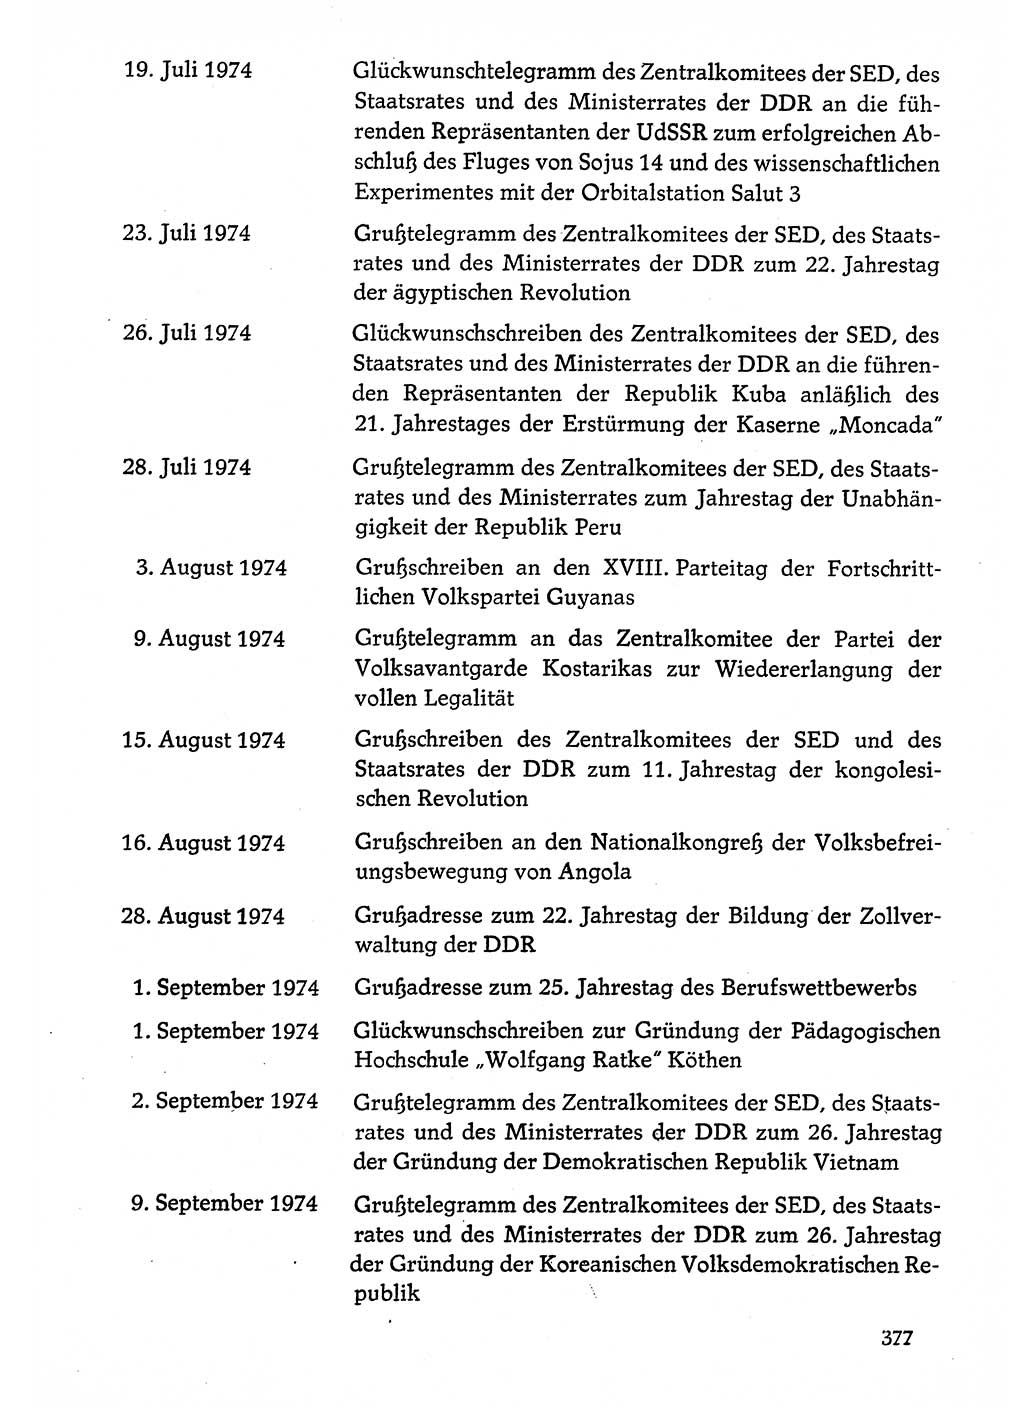 Dokumente der Sozialistischen Einheitspartei Deutschlands (SED) [Deutsche Demokratische Republik (DDR)] 1974-1975, Seite 377 (Dok. SED DDR 1978, Bd. ⅩⅤ, S. 377)